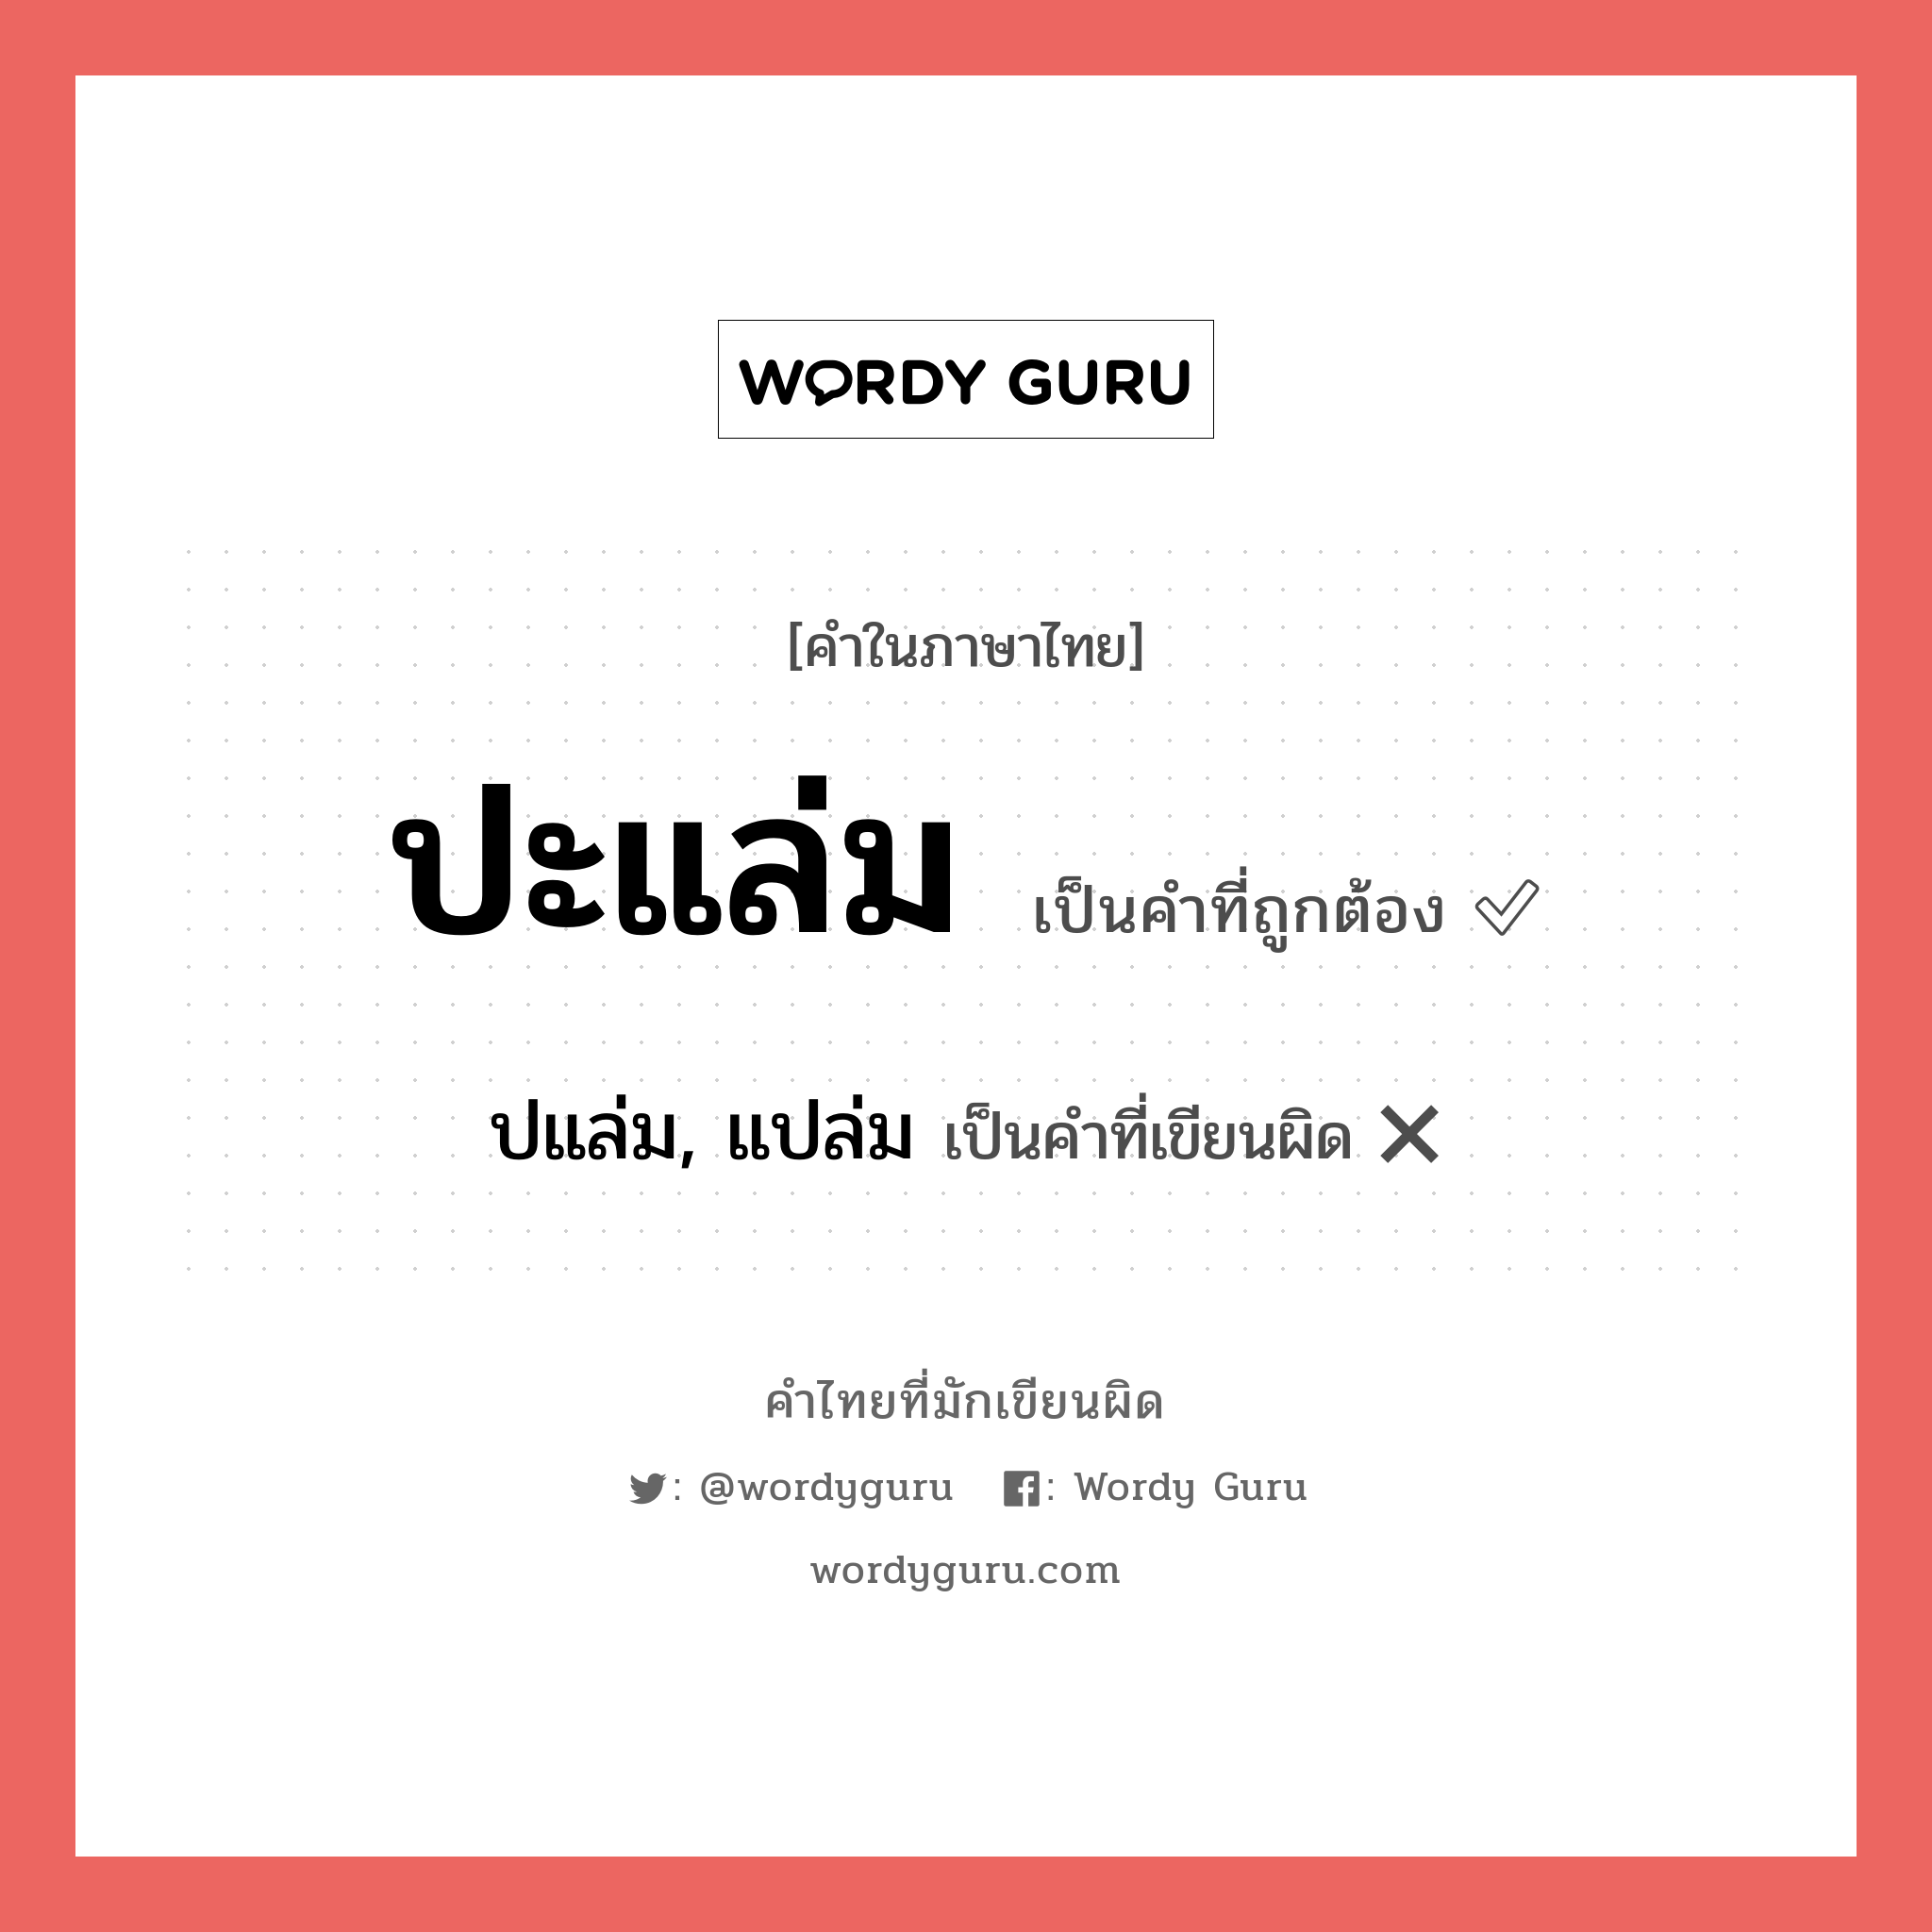 ปแล่ม, แปล่ม หรือ ปะแล่ม คำไหนเขียนถูก?, คำในภาษาไทยที่มักเขียนผิด ปแล่ม, แปล่ม คำที่ผิด ❌ ปะแล่ม